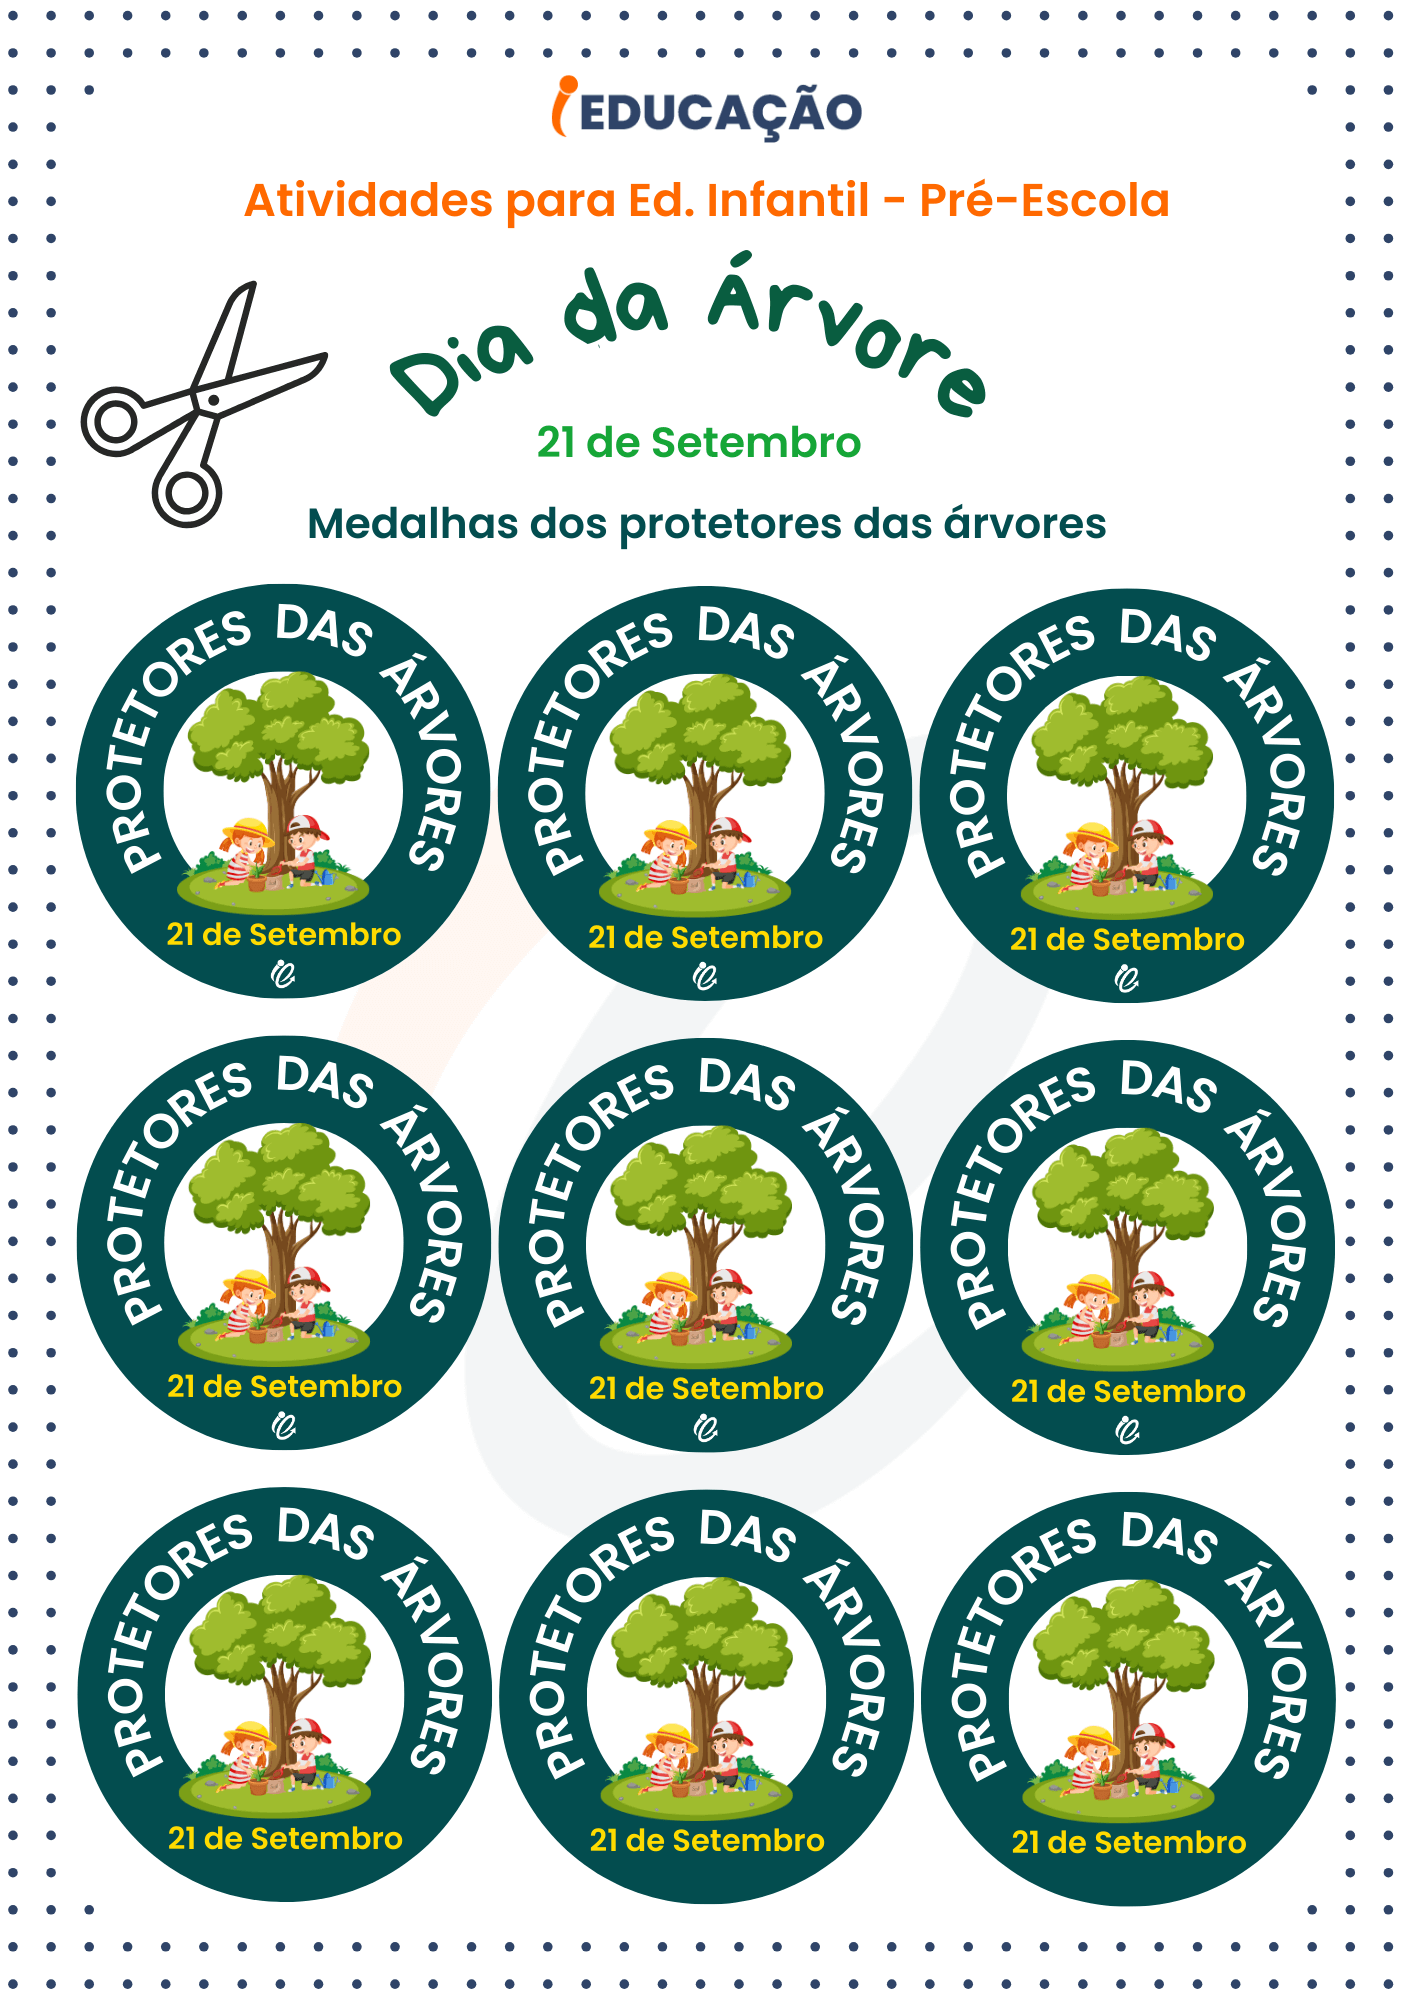 Atividade do dia da árvore para a educação infantil - Medalhas dos protetores das árvores para a pré-escola